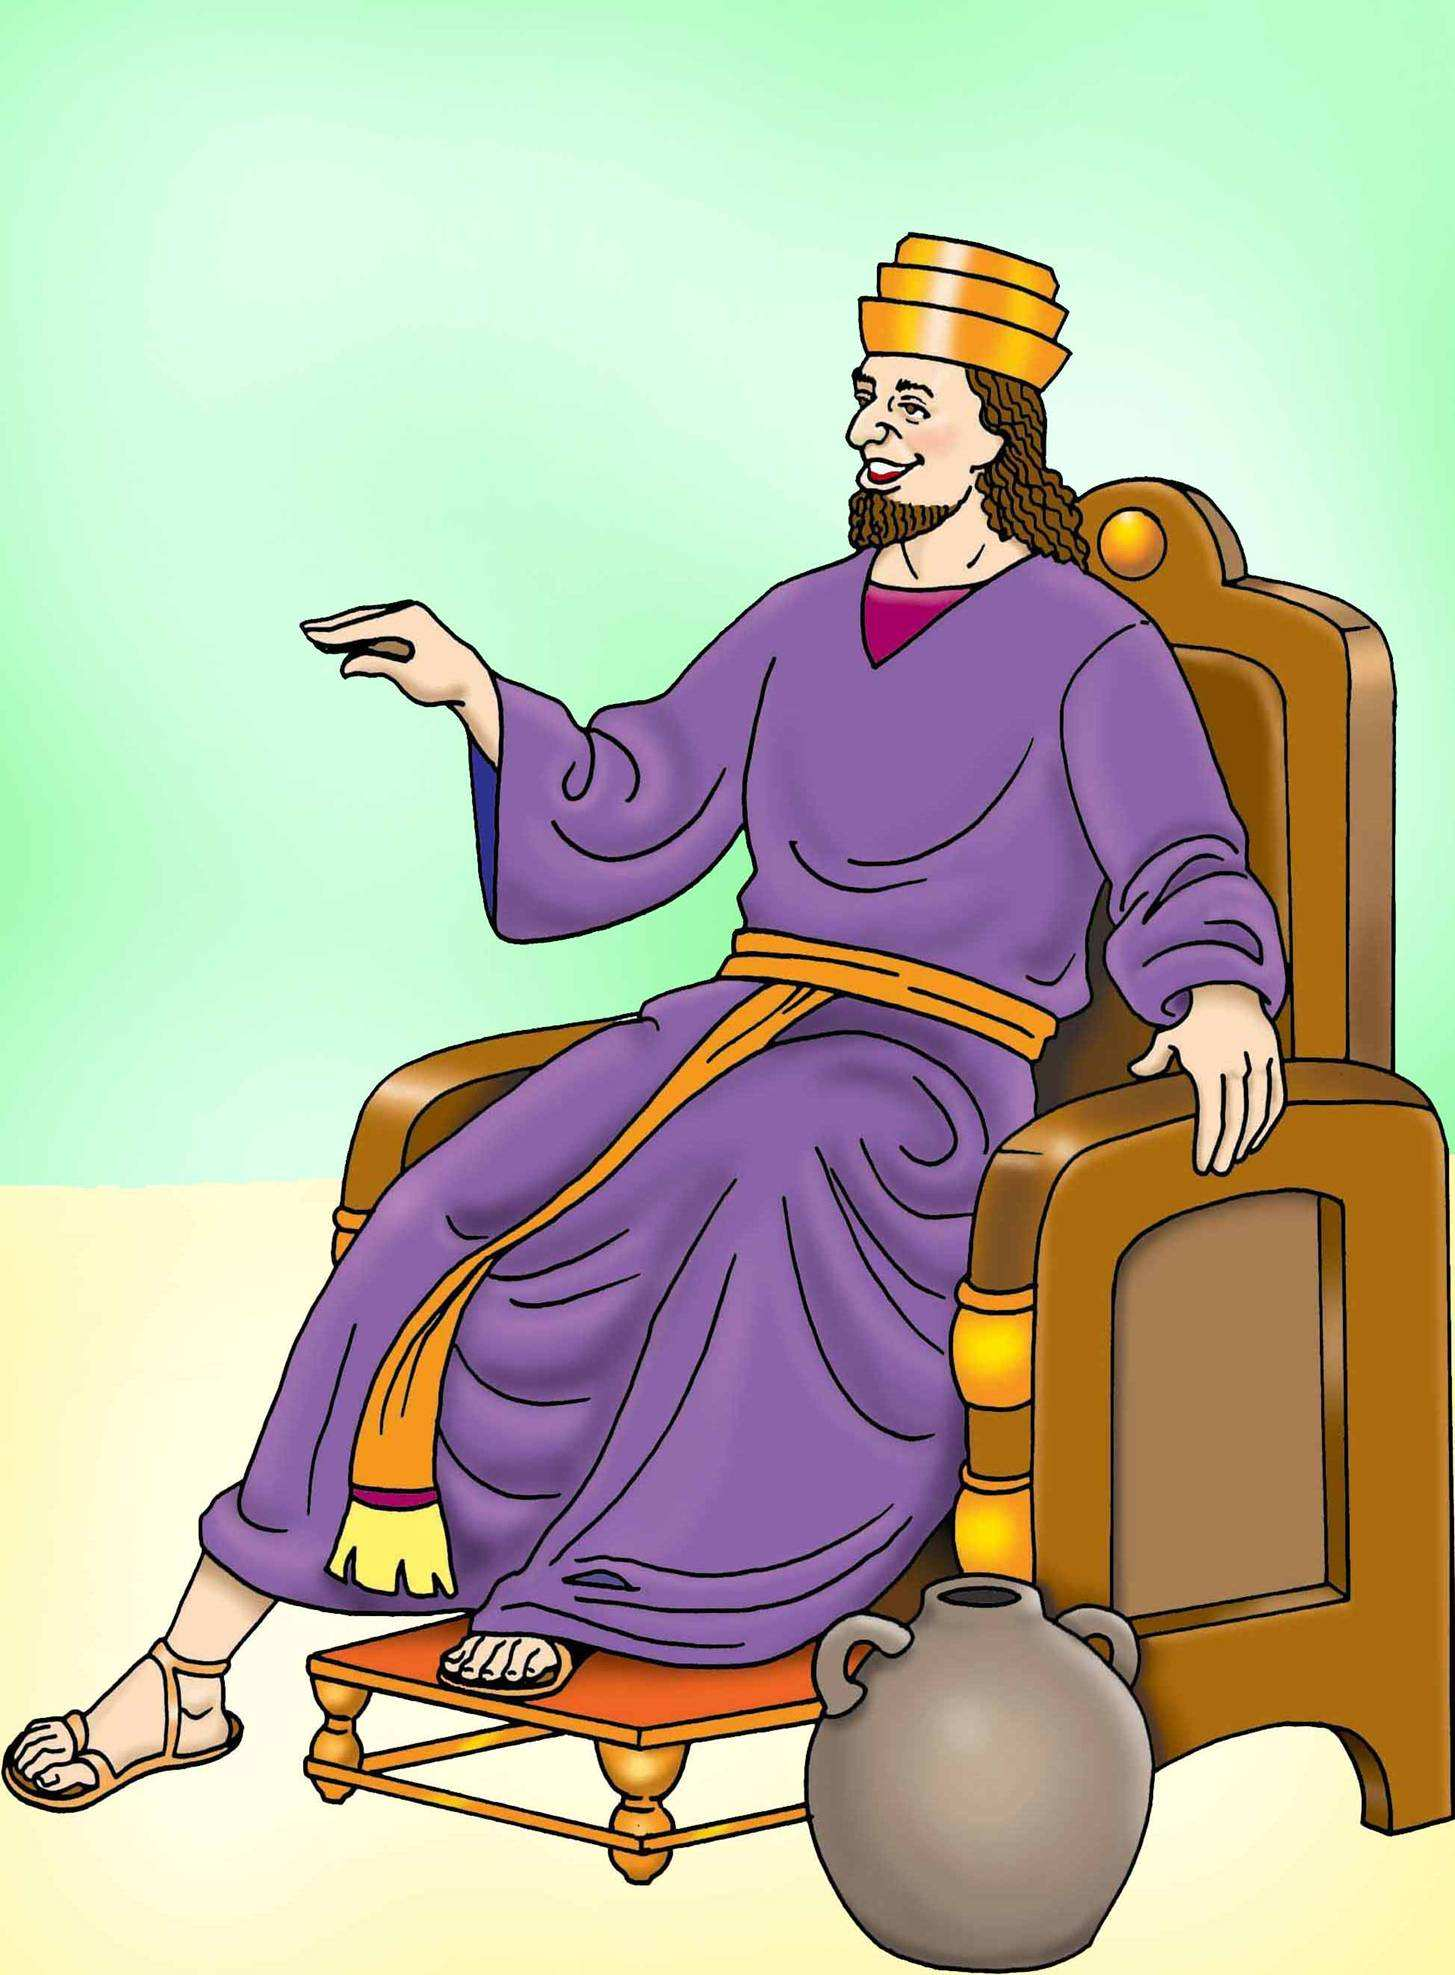 Illustrationsbild 3 Der König will Haman gross machen in seinem Reich.